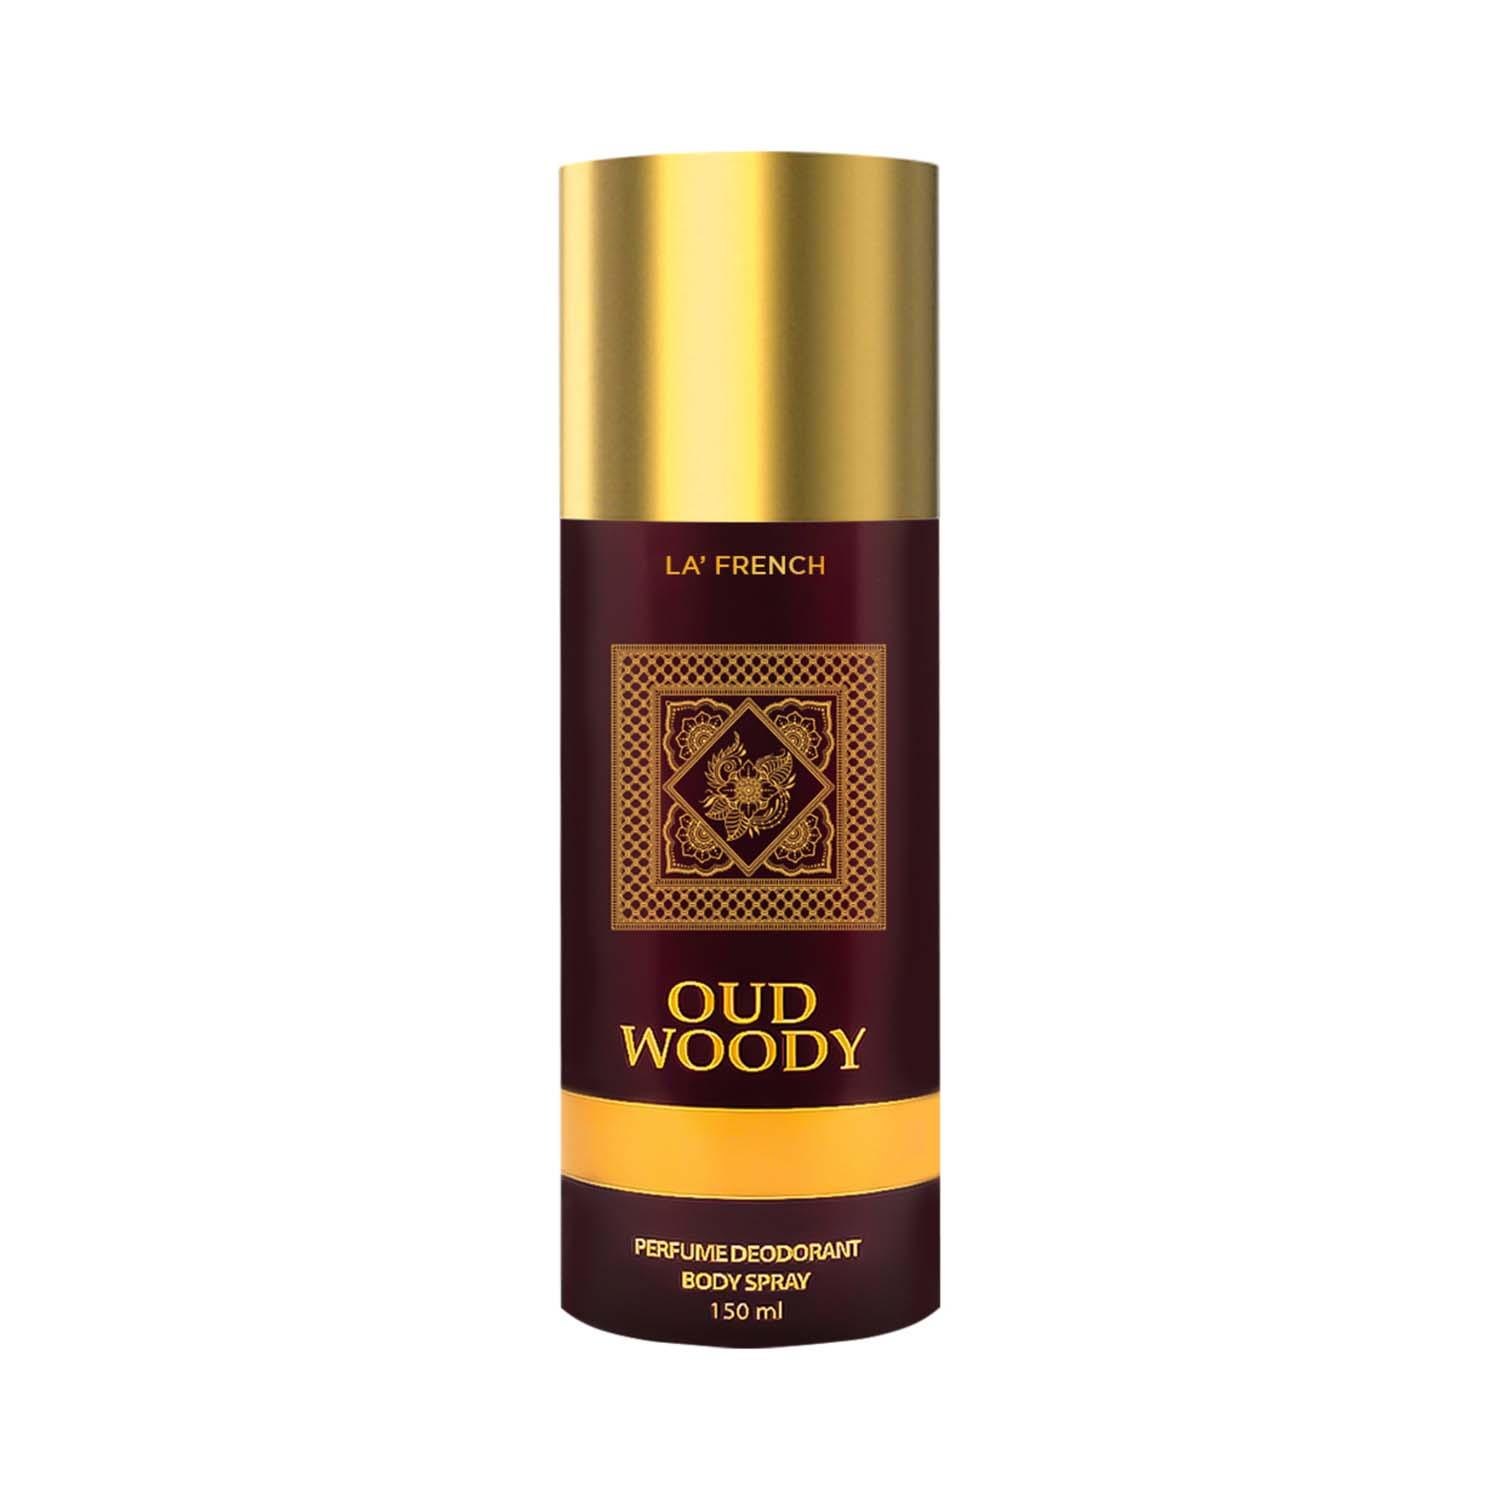 LA' French | La French Oud Woody Deodorant For Men & Women (150ml)